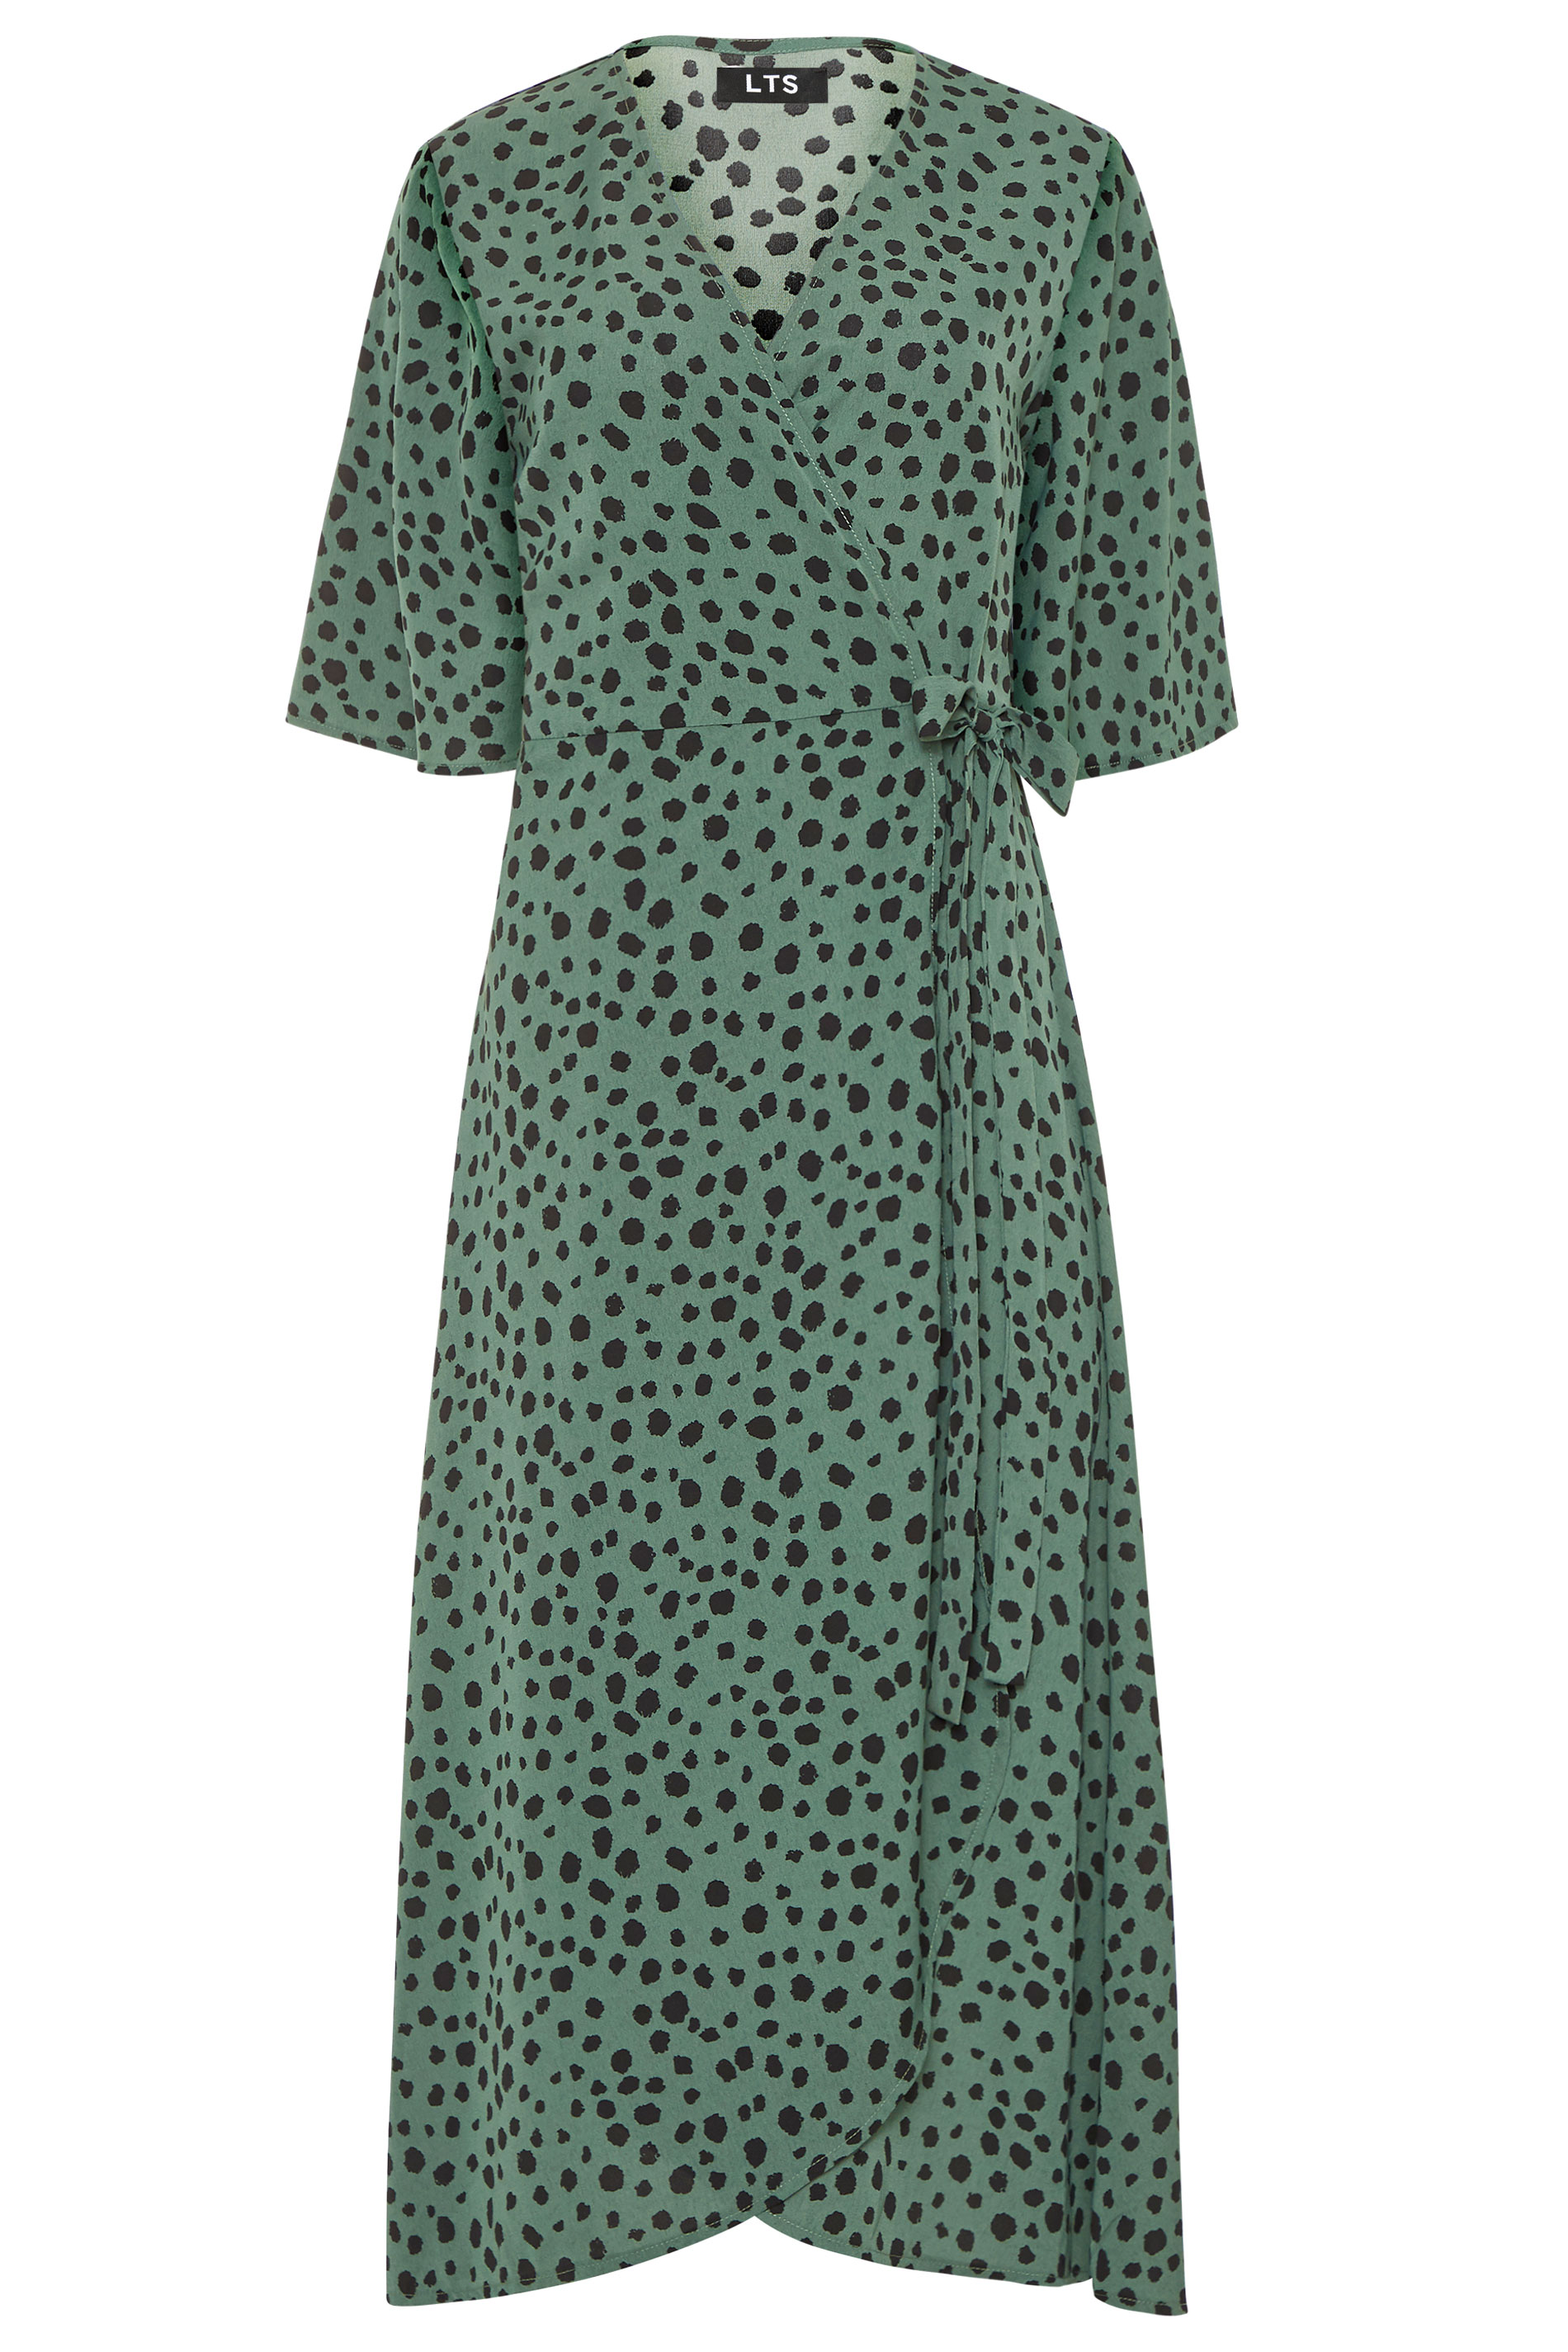 LTS Dark Sage Green Dalmatian Wrap Midi Dress | Long Tall Sally